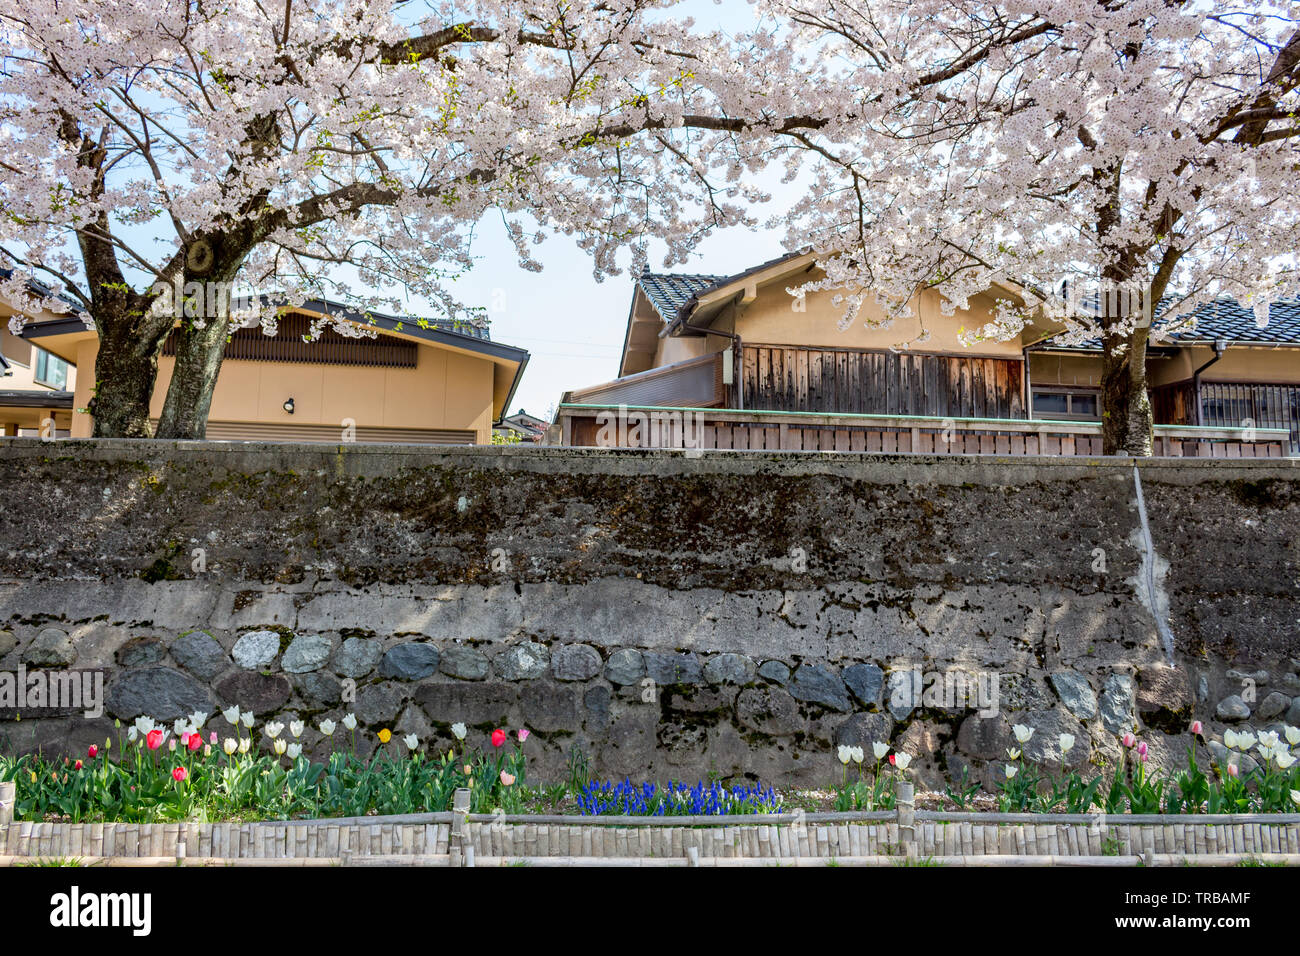 Les fleurs de cerisier, ou sakura, et des tulipes en pleine floraison au printemps le long de la rivière Asanogawa, la ville de Kanazawa, Préfecture d'Ishikawa, le Japon de l'Ouest. Banque D'Images